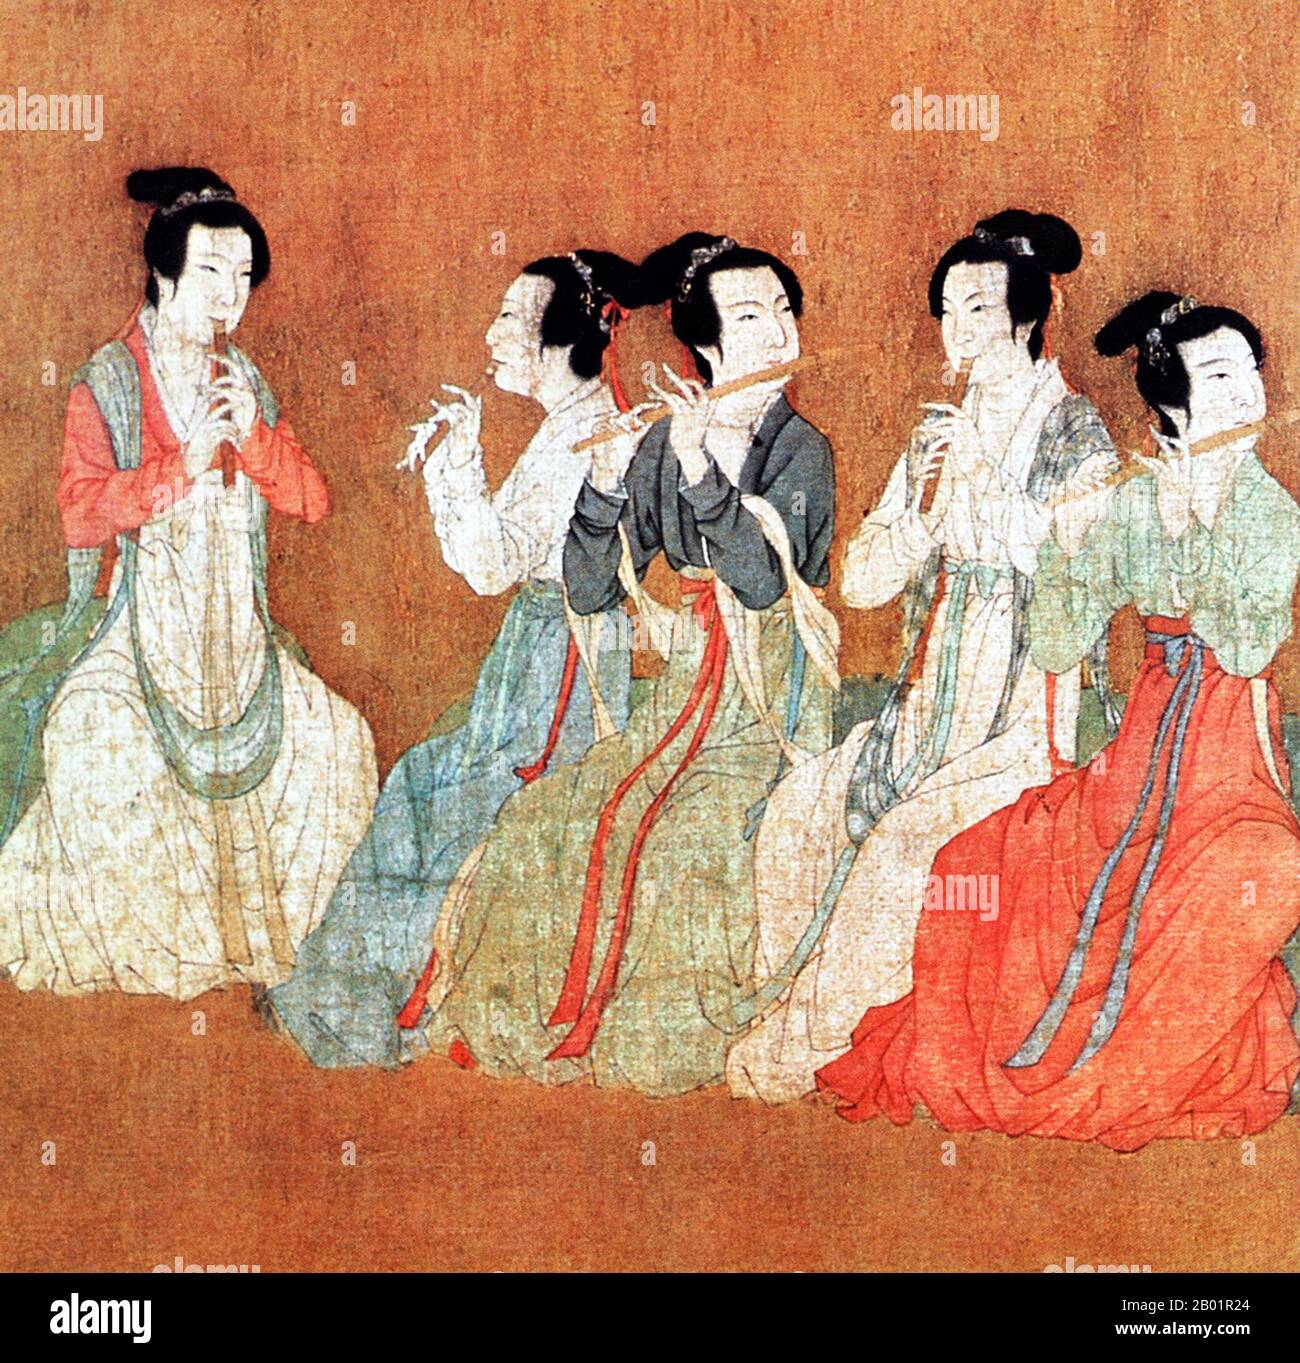 Chine : cinq femmes jouant des flûtes. Détail de la peinture à défilement manuel 'Revels de la nuit de Han Xizai' par Gu Hongzhong (937-975), remake ultérieur de la dynastie Song (960-1279) d'un original du 10e siècle. Les Revels nocturnes de Han Xizai est un rouleau peint représentant Han Xizai, ministre de l'empereur des Tang du Sud Li Yu (937-978). Cette peinture narrative est divisée en cinq sections distinctes : Han Xizai écoute la pipa, regarde les danseurs, se repose, joue des instruments à cordes et voit ensuite les invités au loin. Banque D'Images